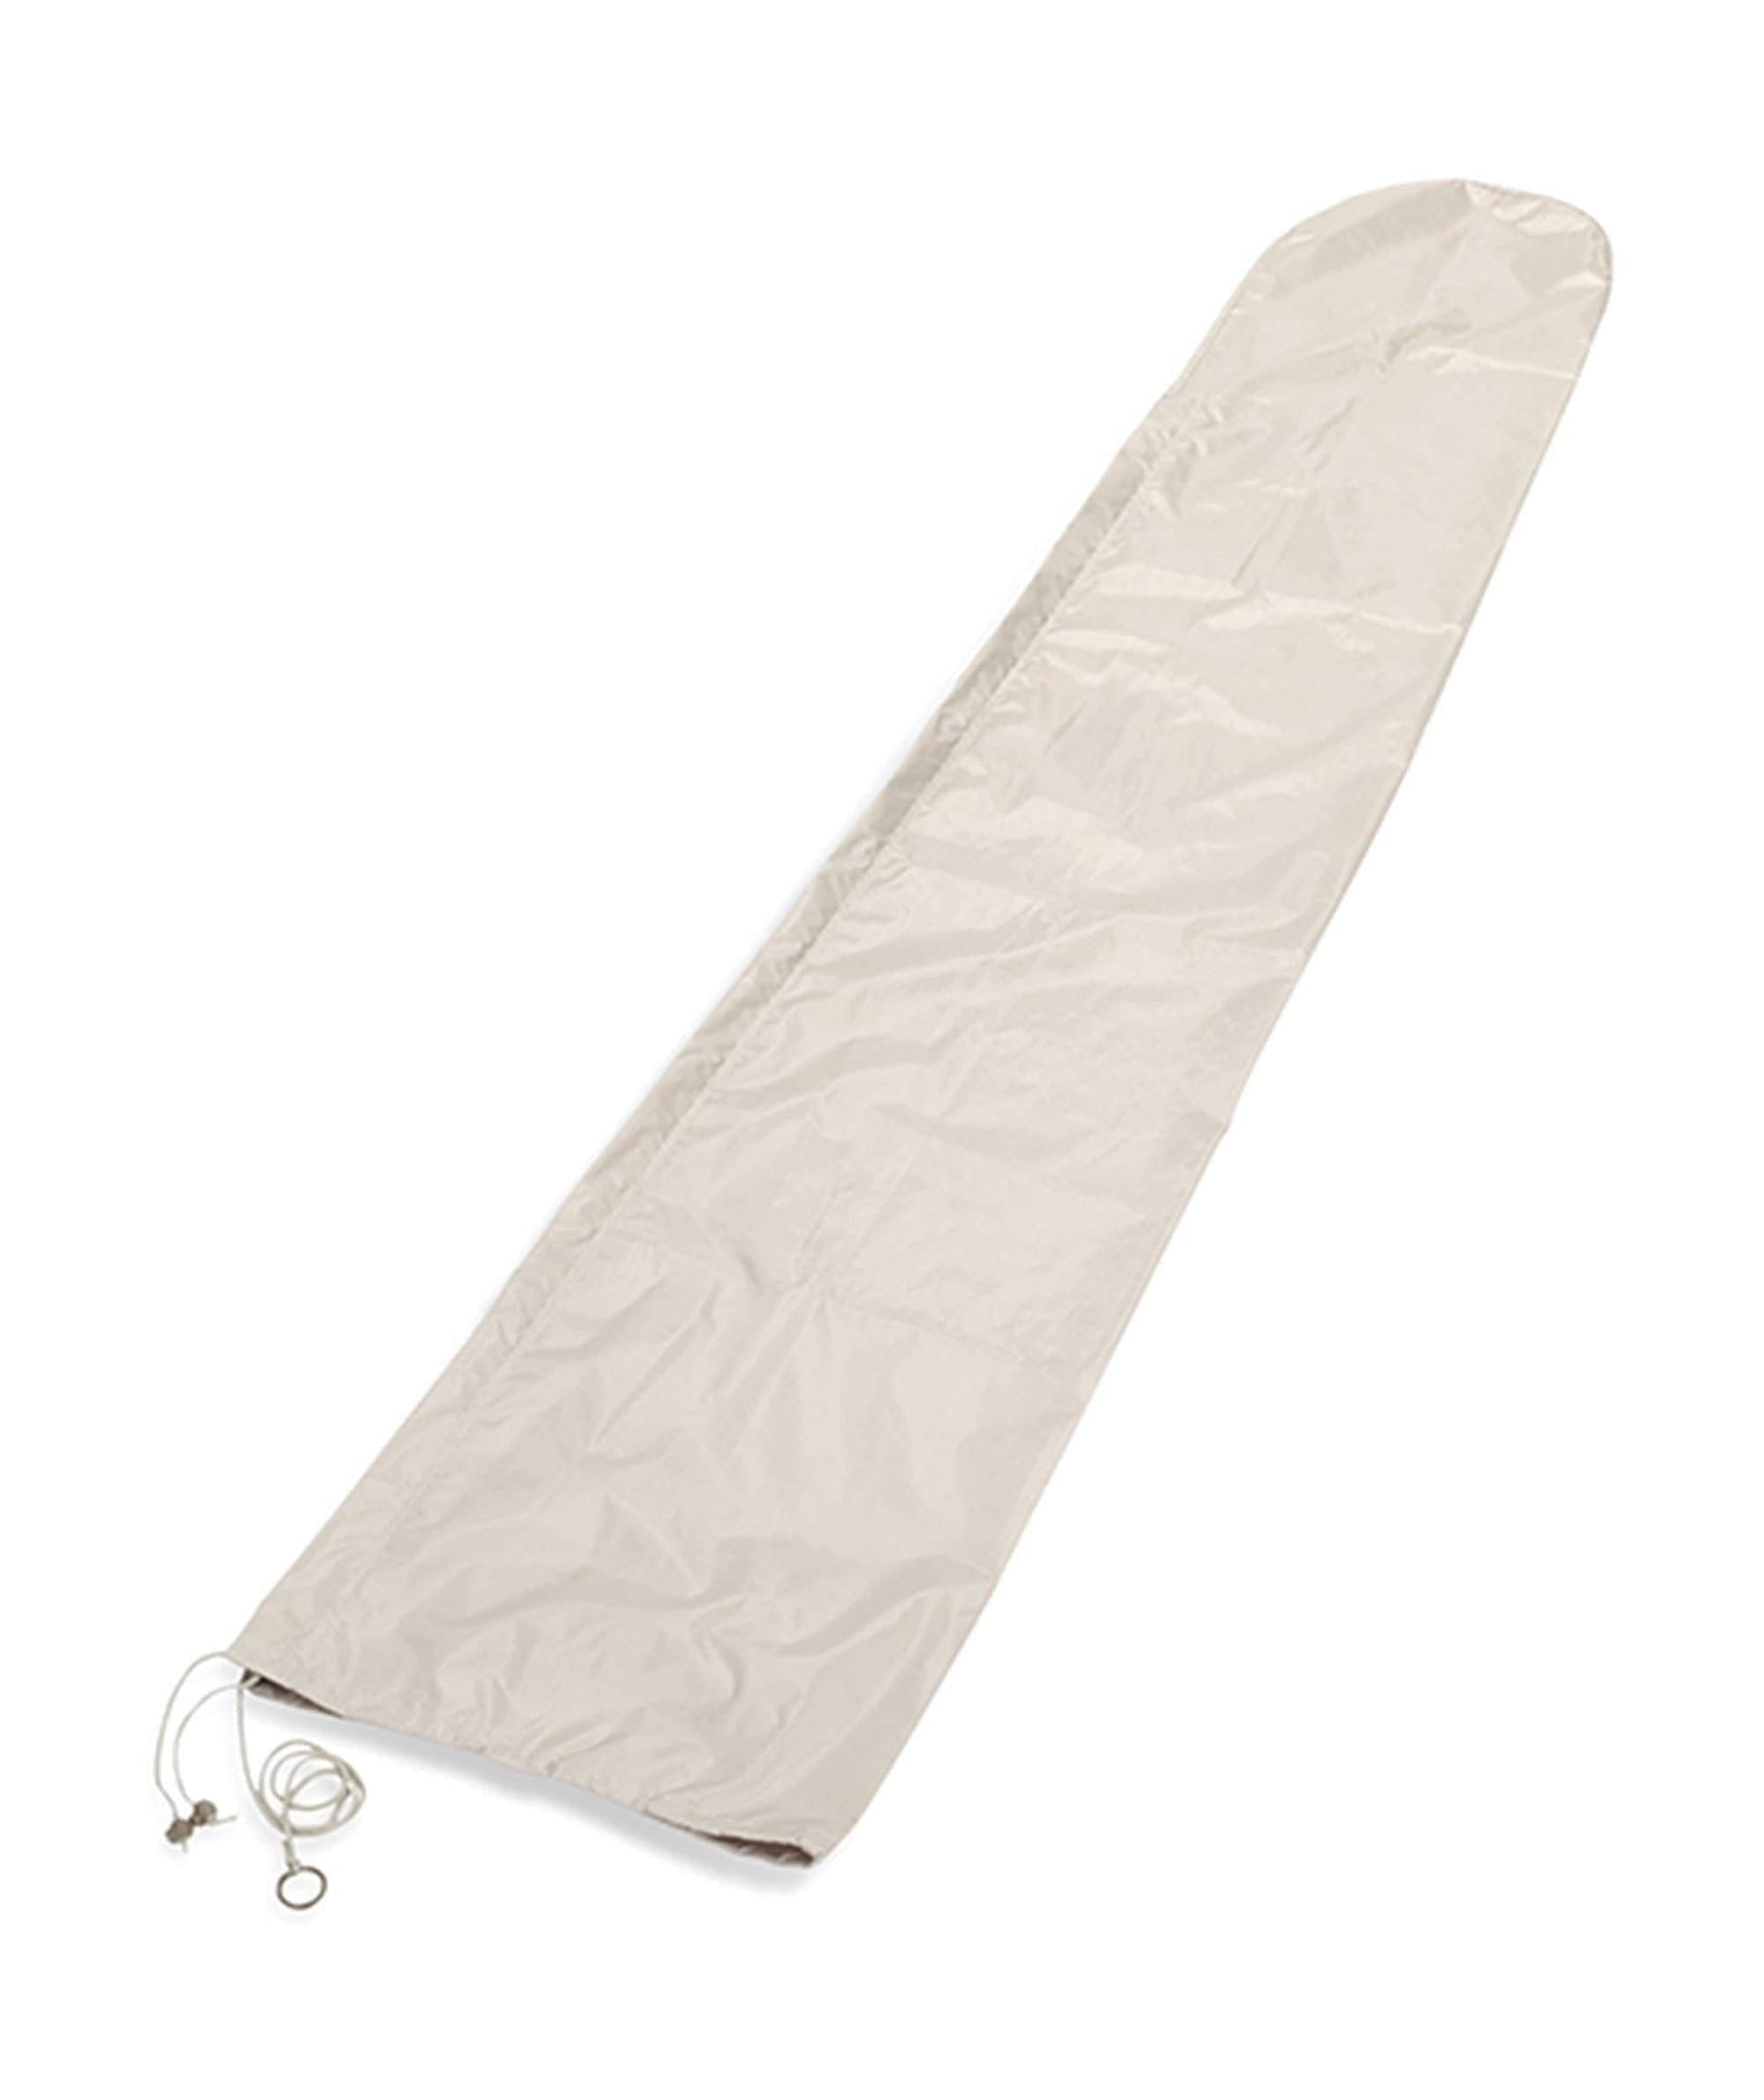 Skagerak Abdeckung für Parasol Ø330 cm, aus weiß